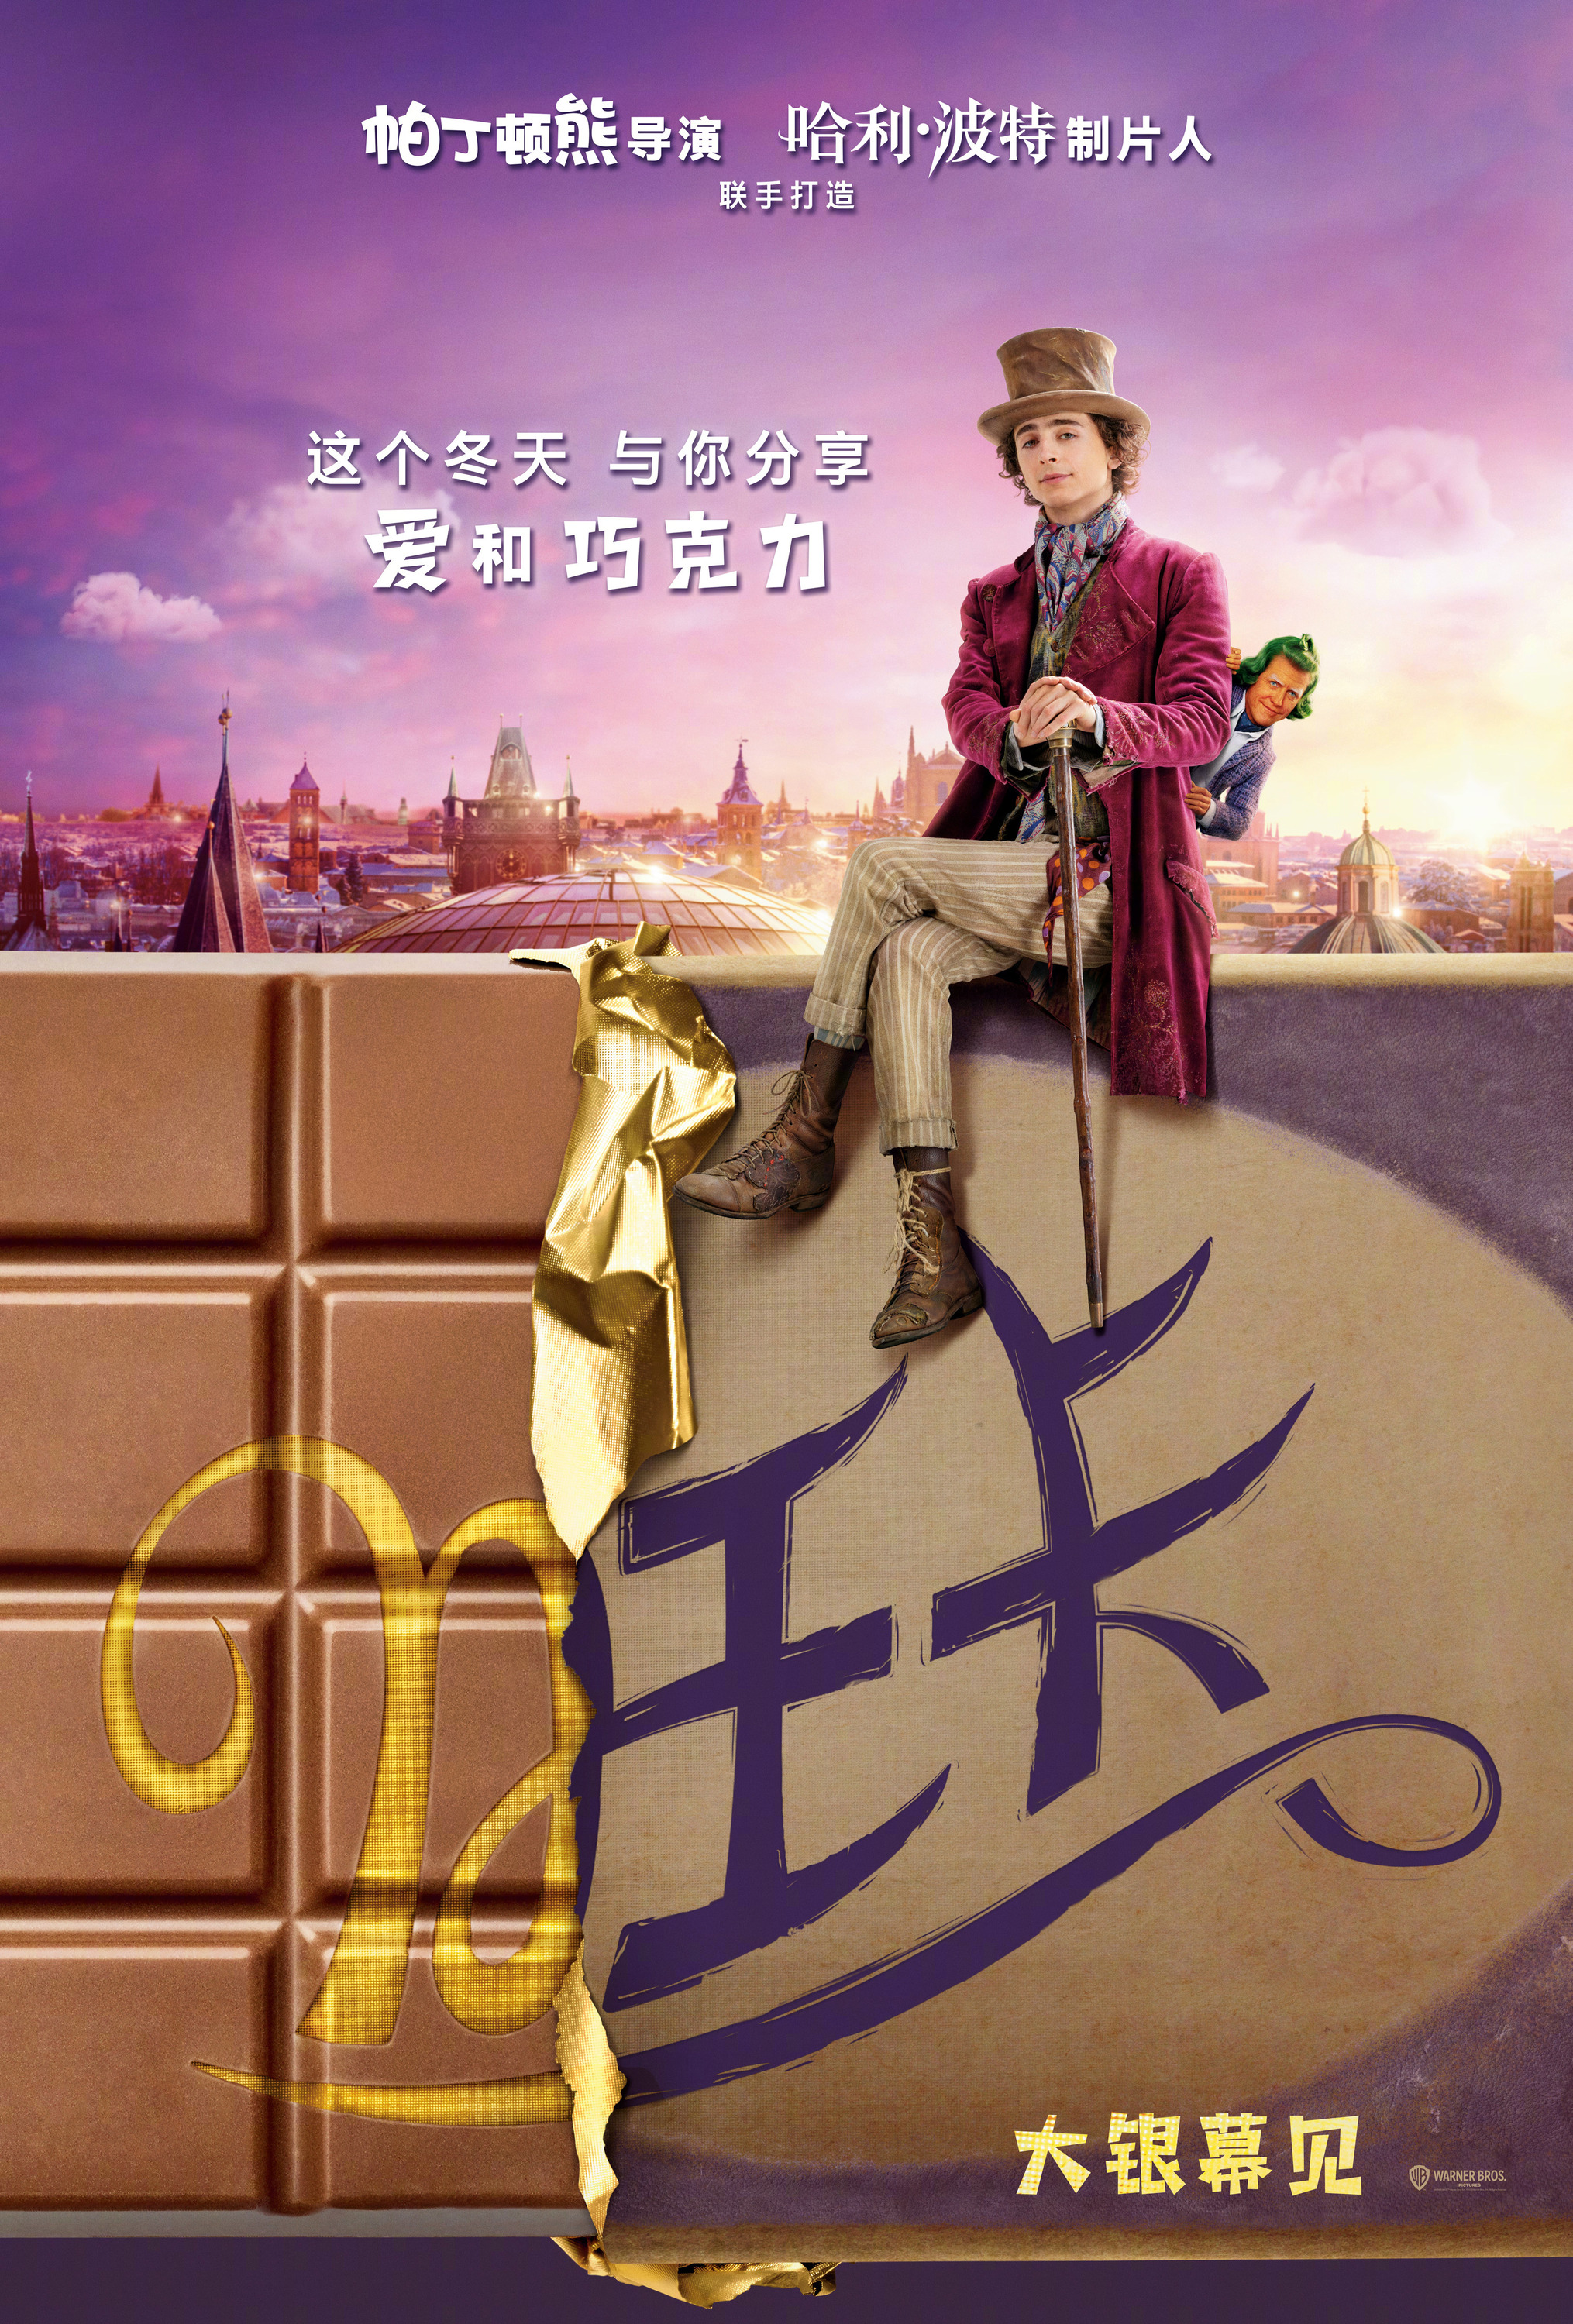 Mega Sized Movie Poster Image for Wonka (#19 of 22)